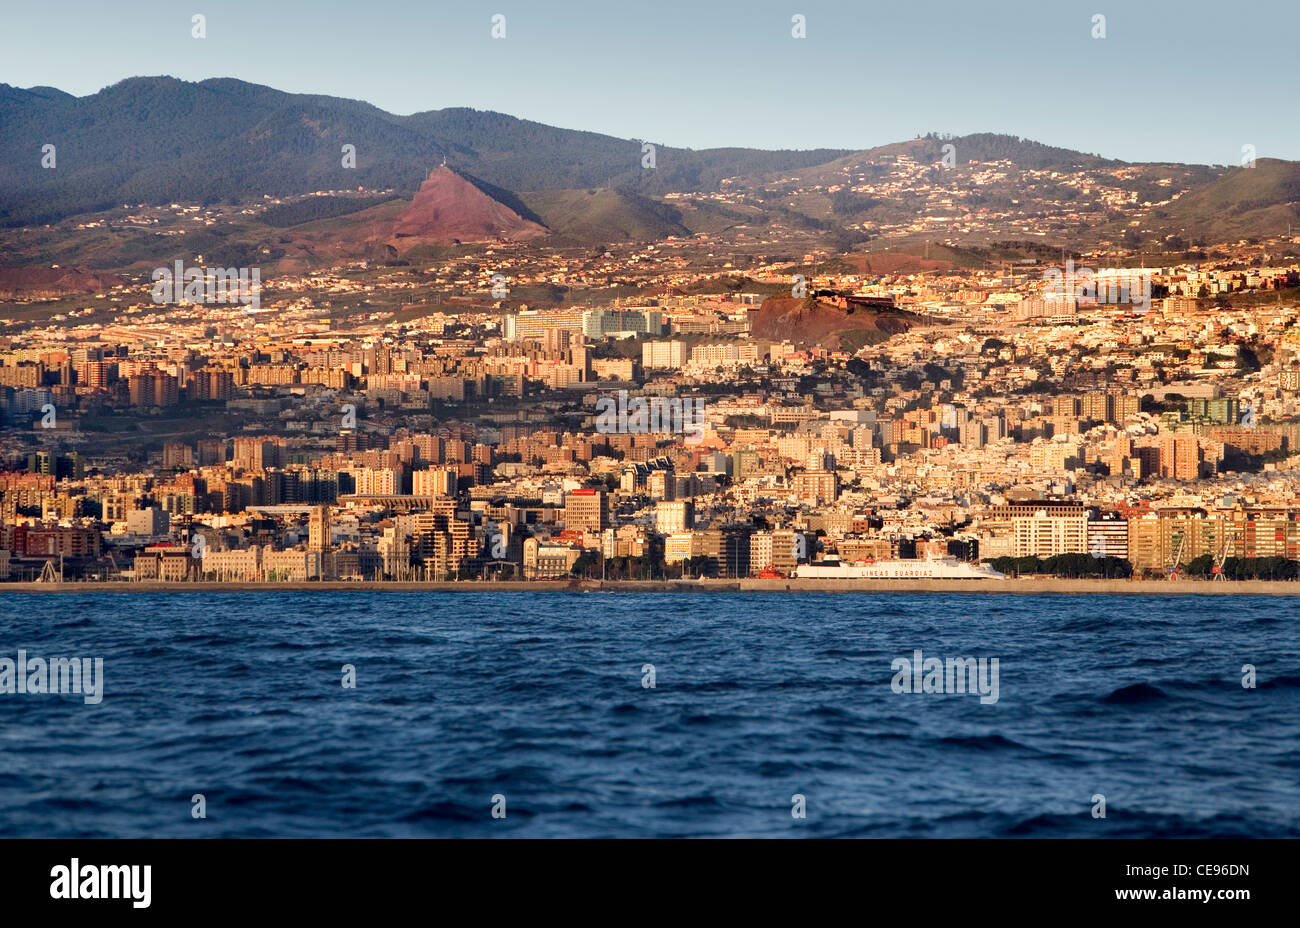 Die Stadt Santa Cruz auf der Insel Teneriffa auf den Kanarischen Inseln aus dem Wasser gesehen. Stockfoto